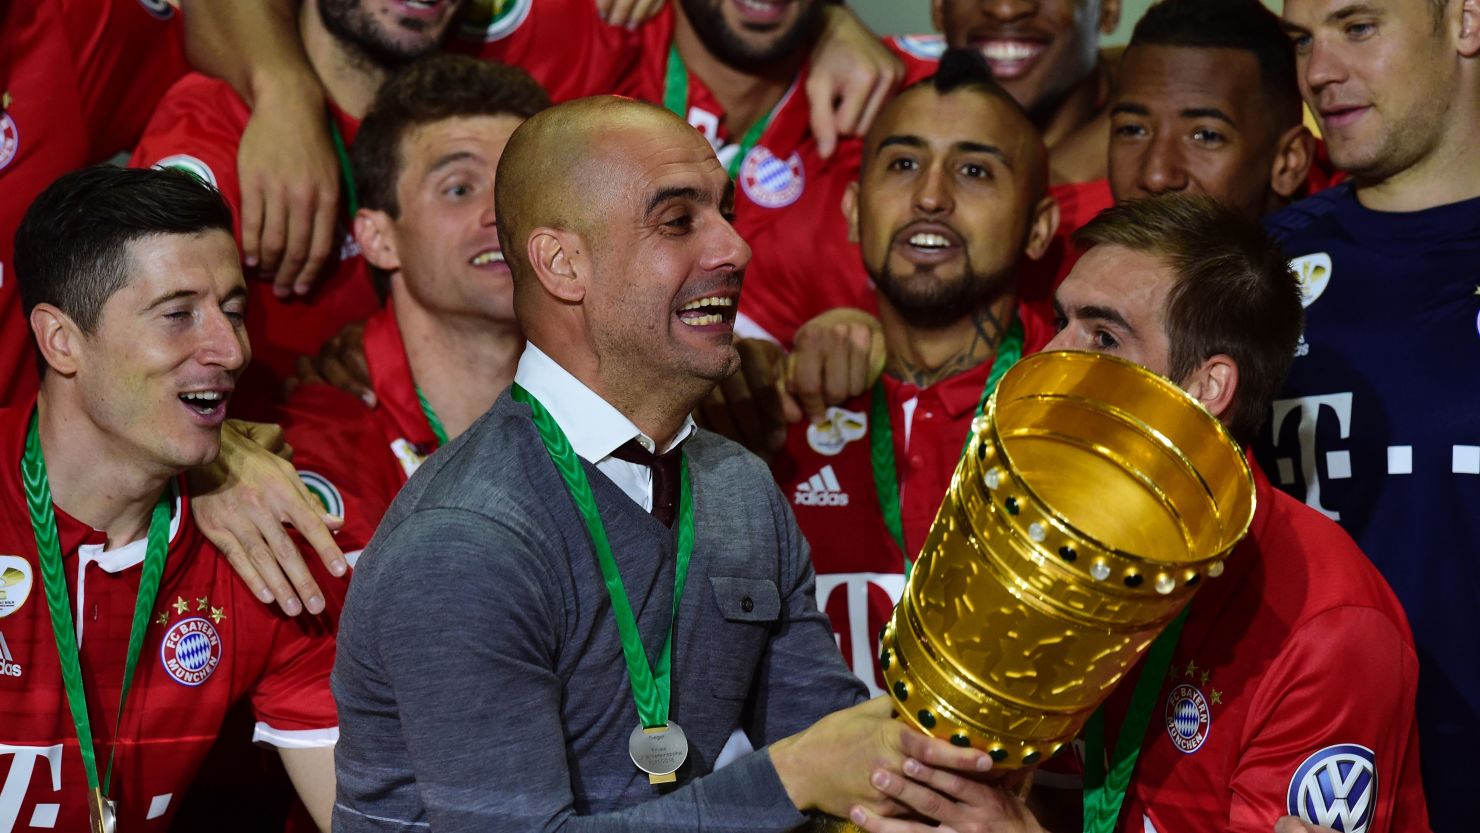 Bayern Munich manager Pep Guardiola celebrates after winning the DFB Pokal final.